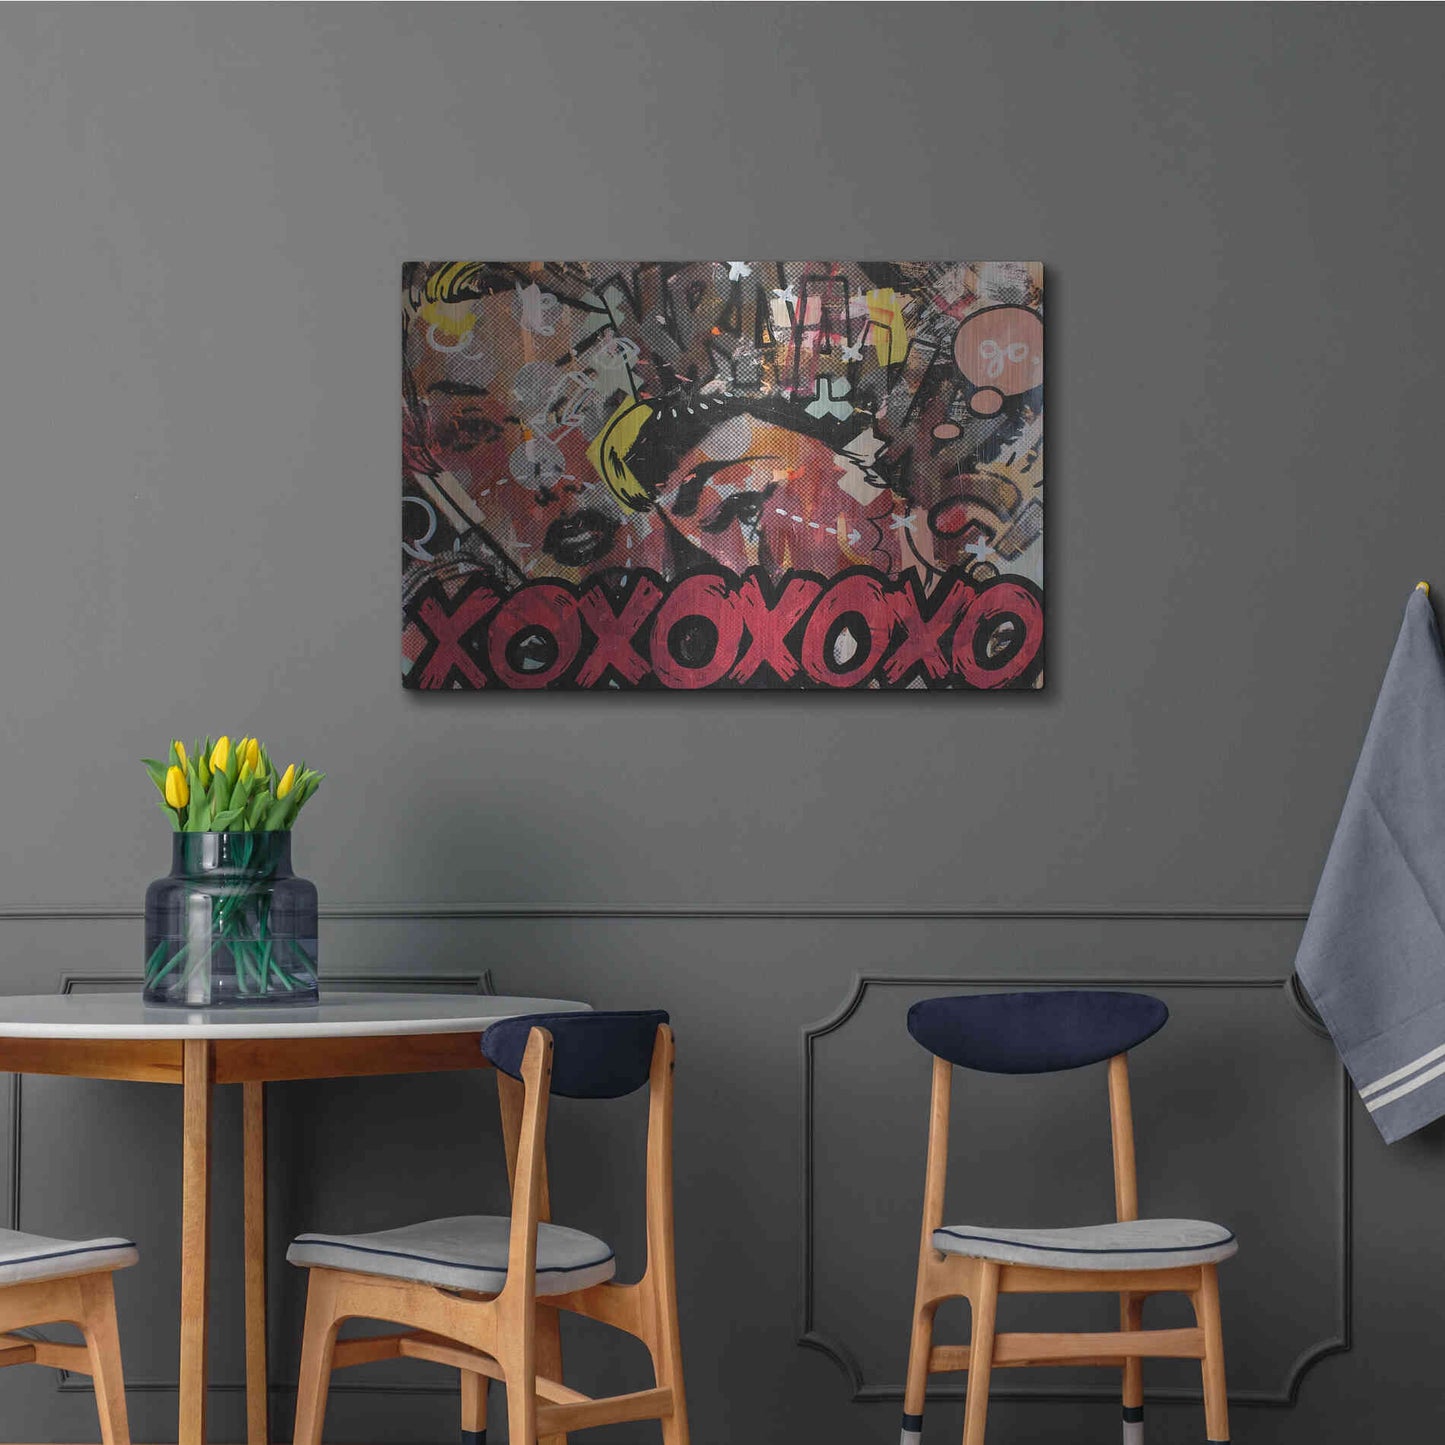 Luxe Metal Art 'Kraang' by Dan Monteavaro, Metal Wall Art,36x24